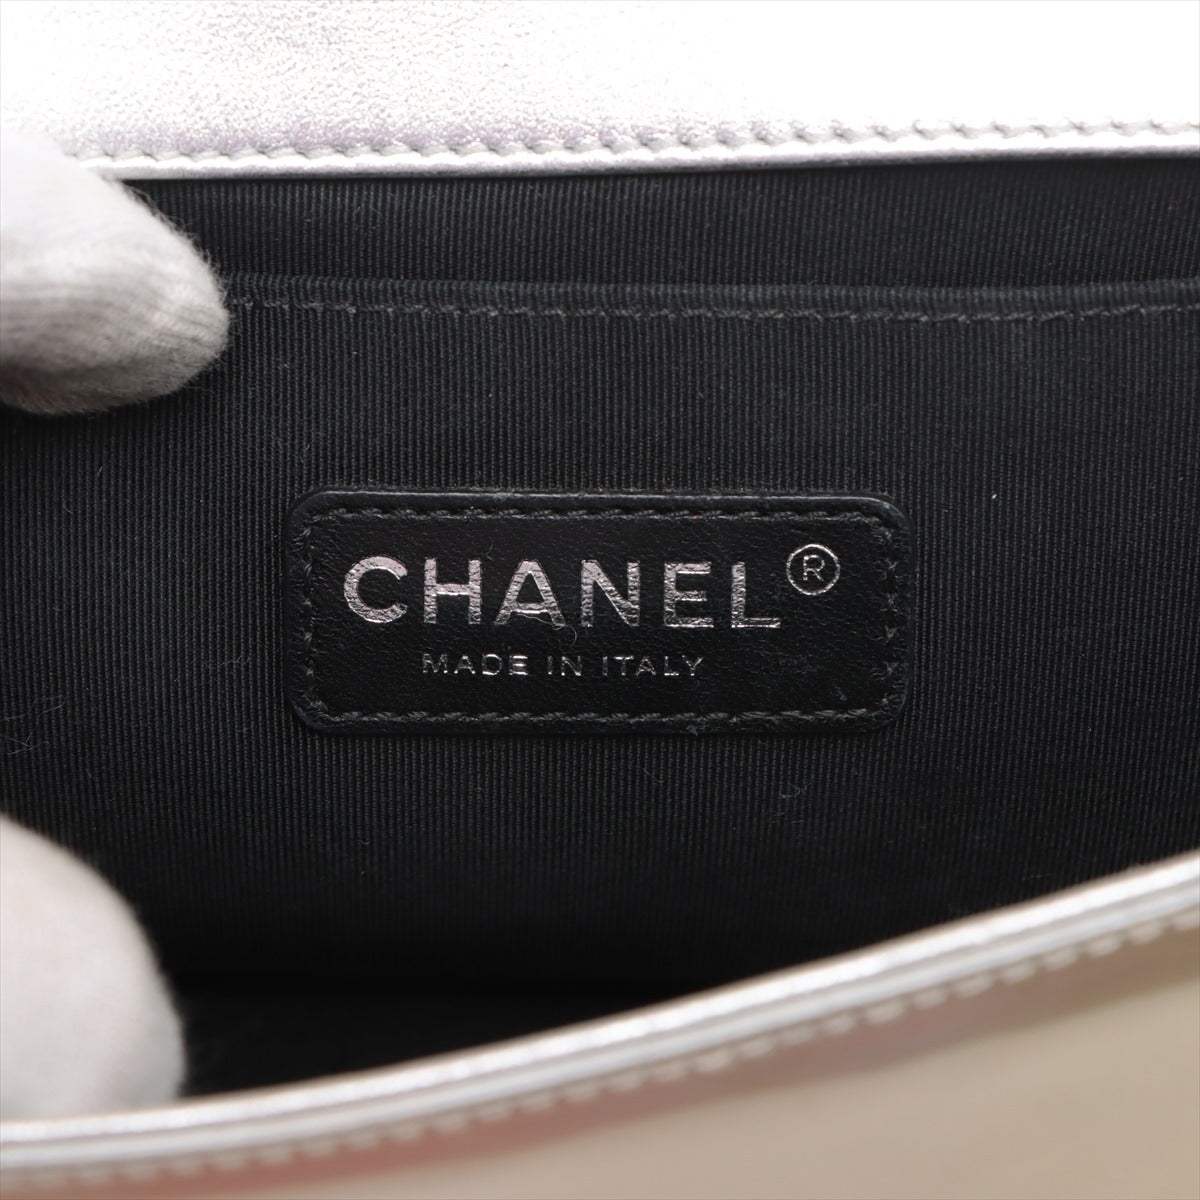 Chanel Boy Chanel 25 漆皮鏈條單肩包 G x 銀銀 17 A67086